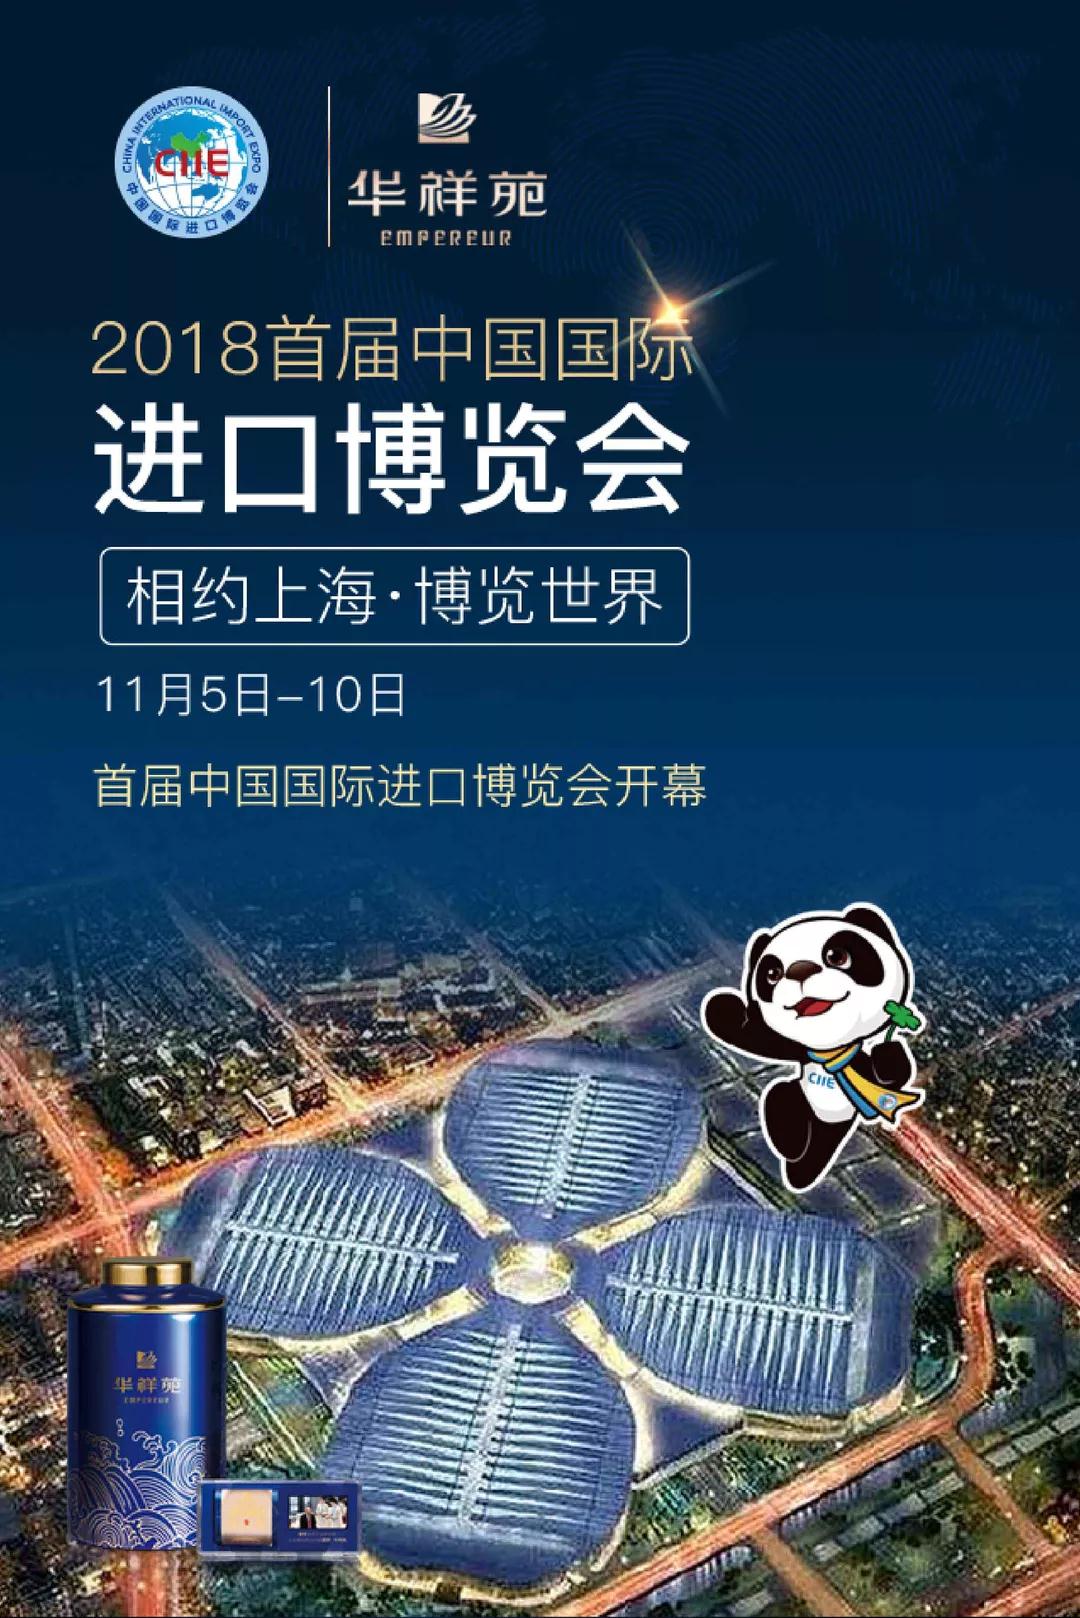 2018首届中国国际进口博览会 华祥苑赞助商相约上海·博览世界